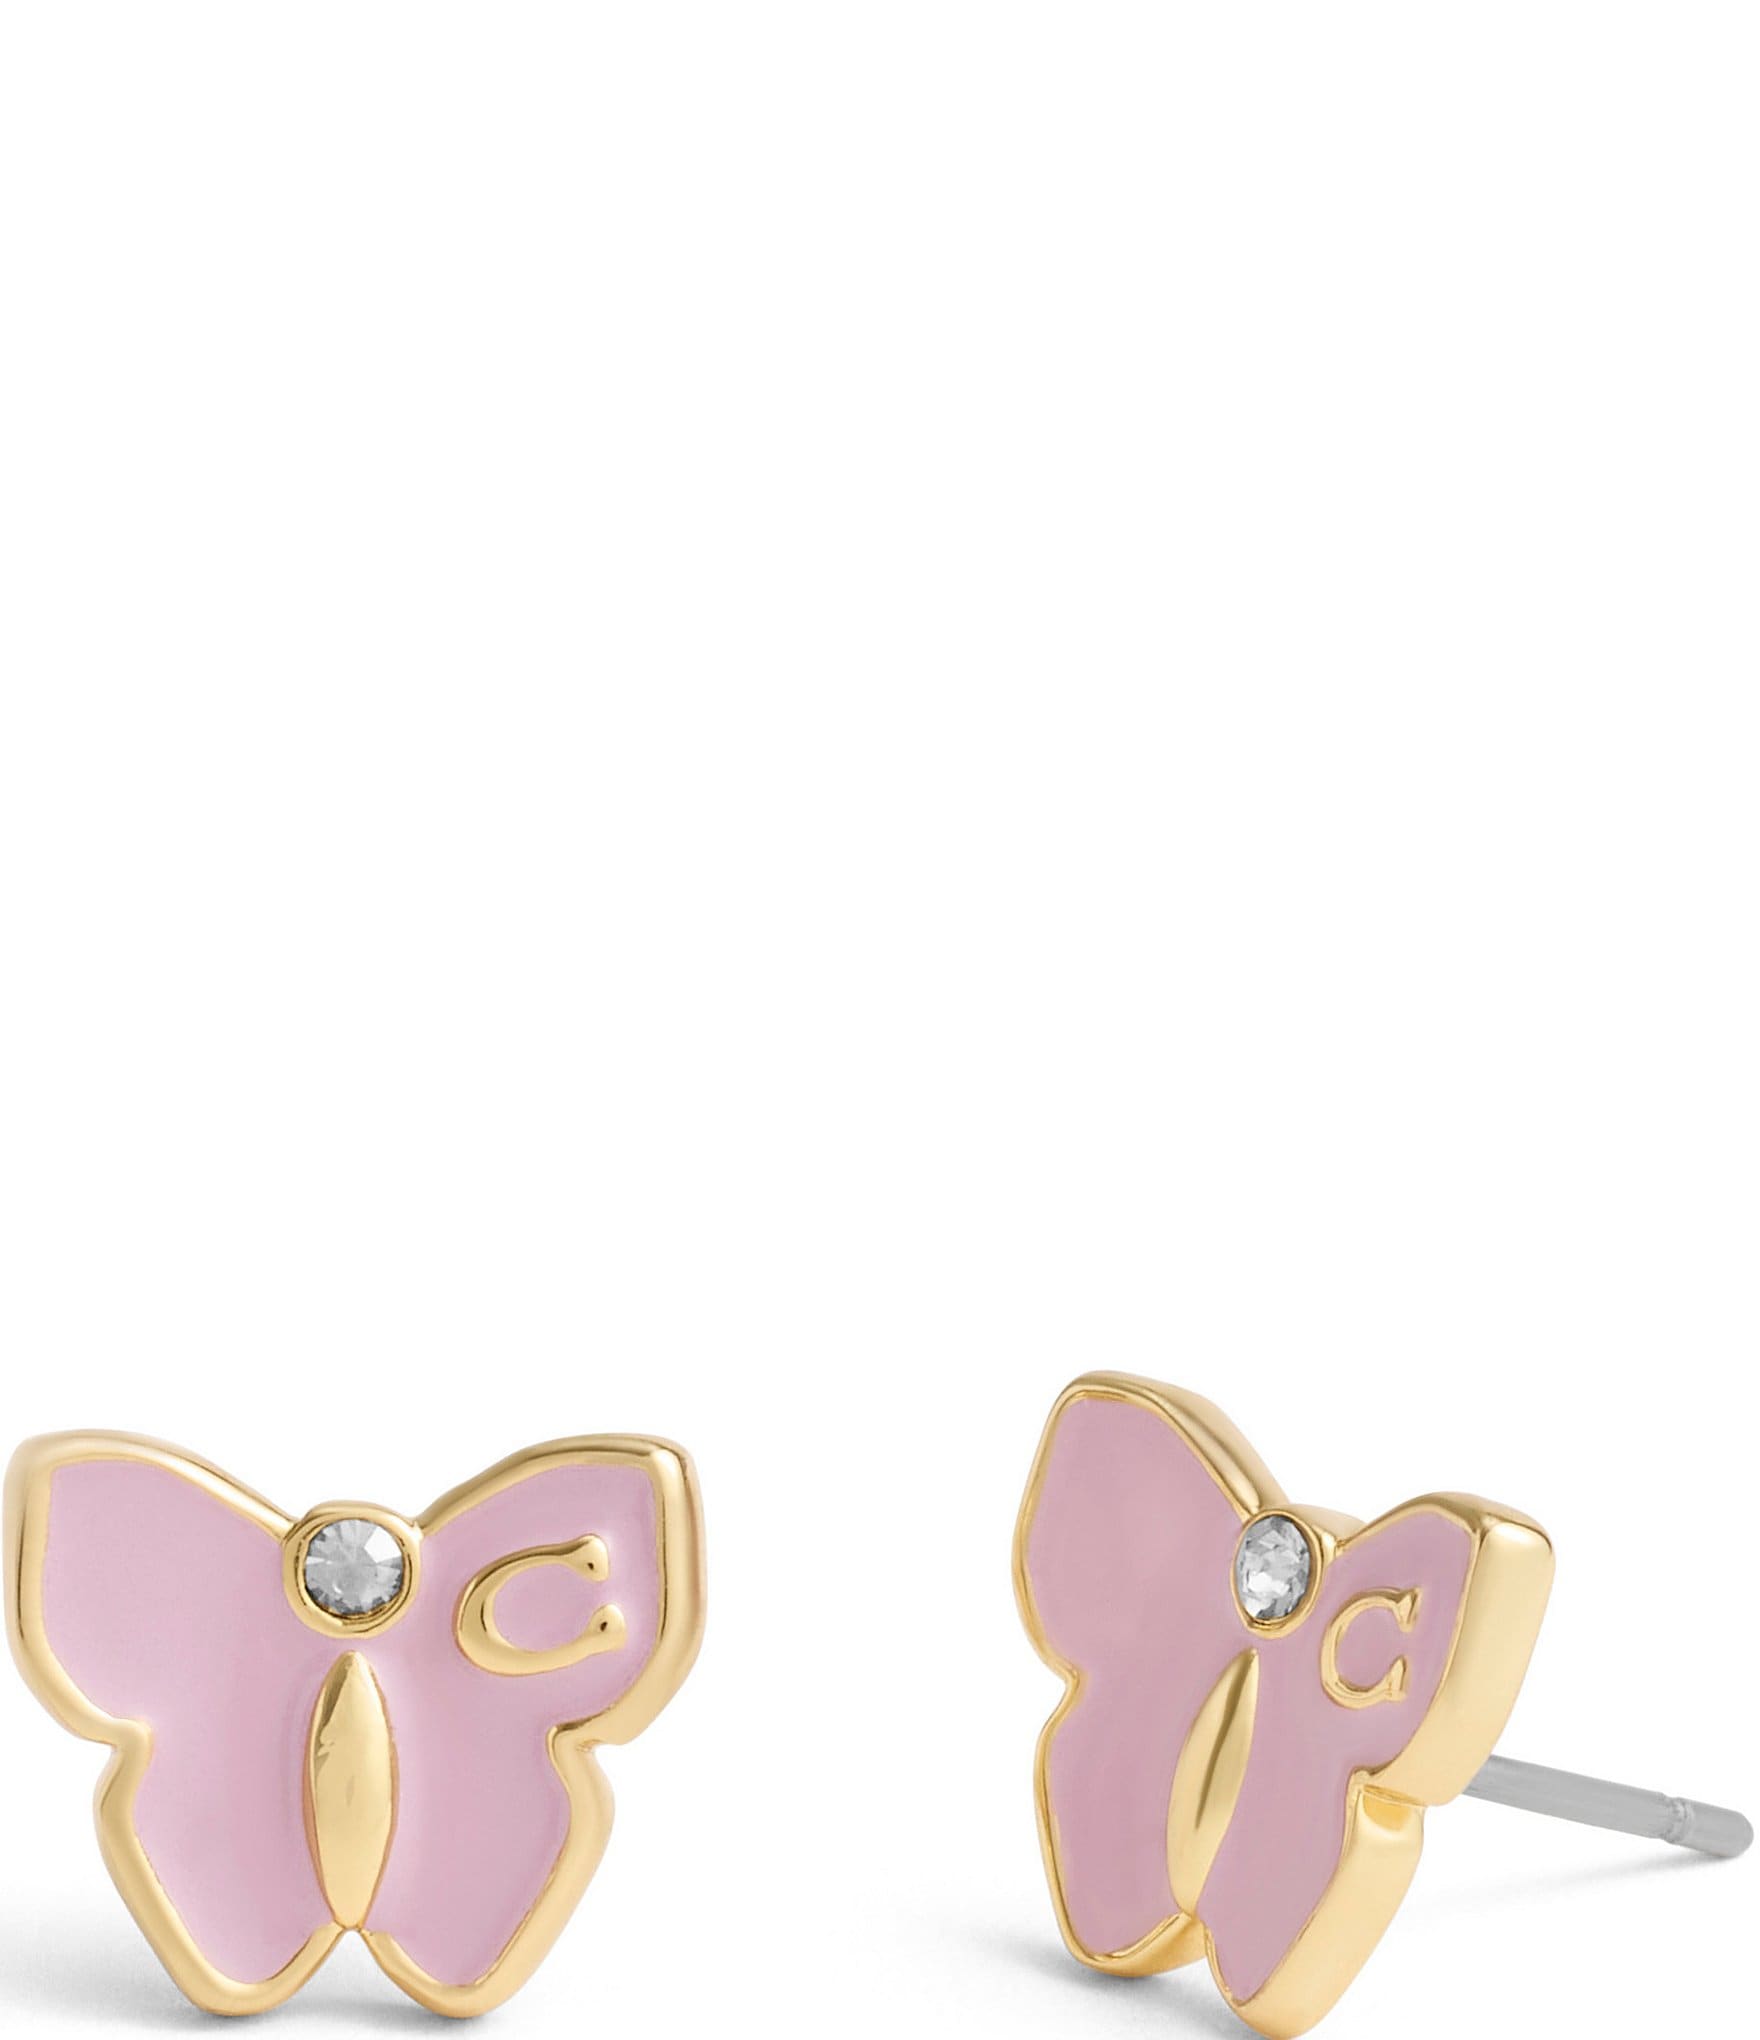 Buy Gold & Purple Butterfly Stud Earrings-purple Earrings,purple Butterfly  Earrings,small Gold Earrings in the Uk,small Gold Butterfly Jewellery  Online in India - Etsy